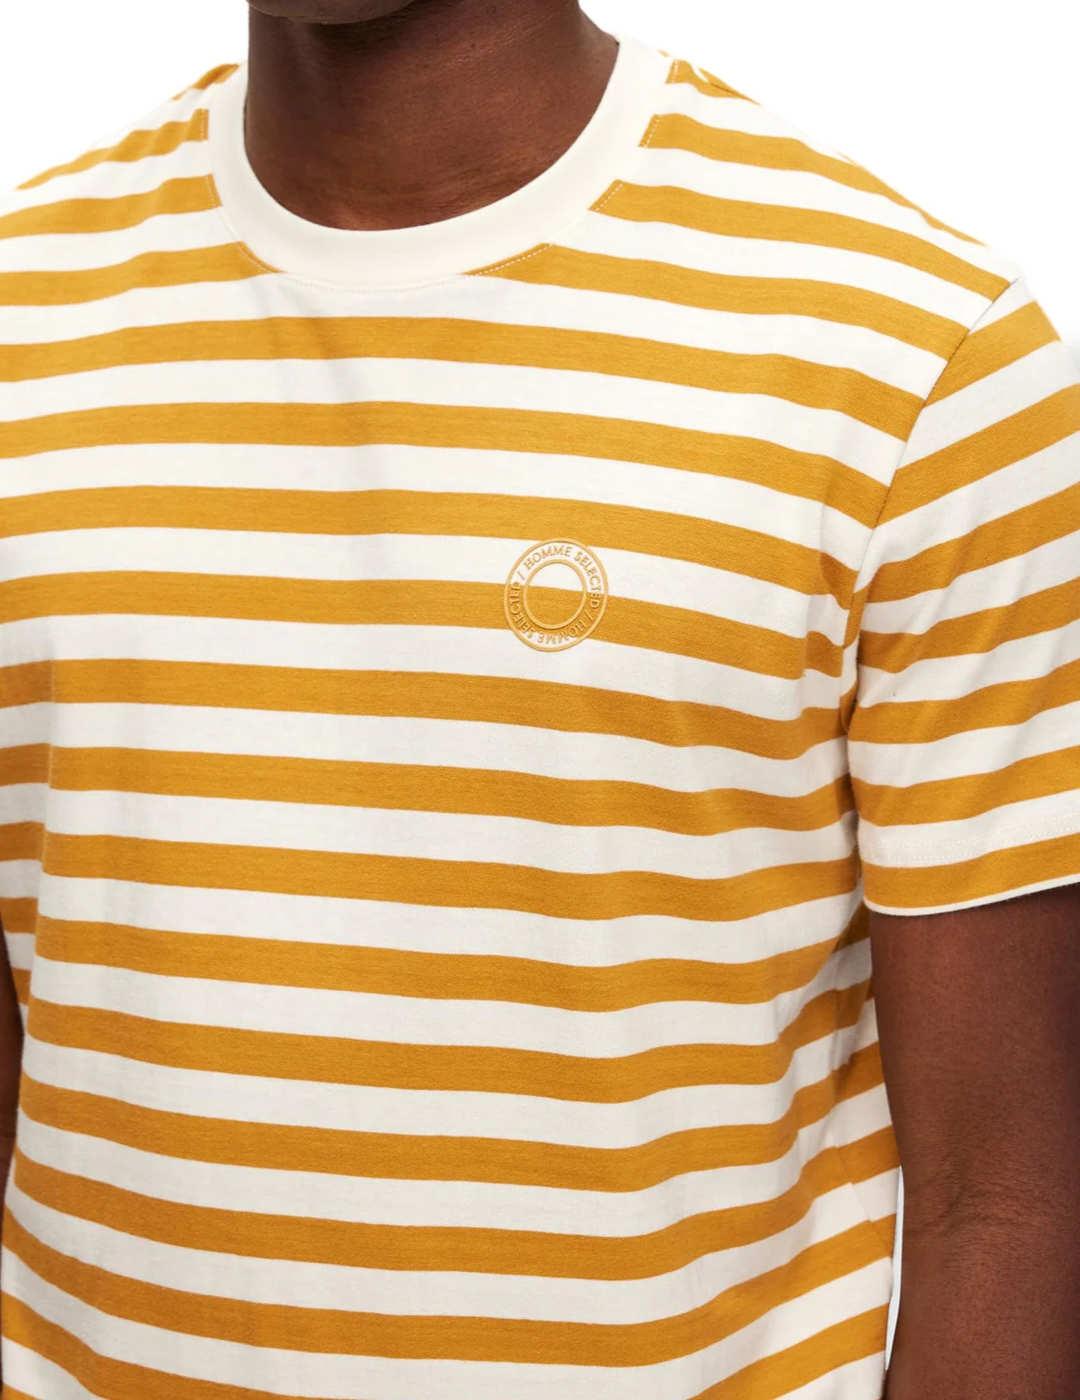 Camiseta Selected rayas amarillo y beige para hombre